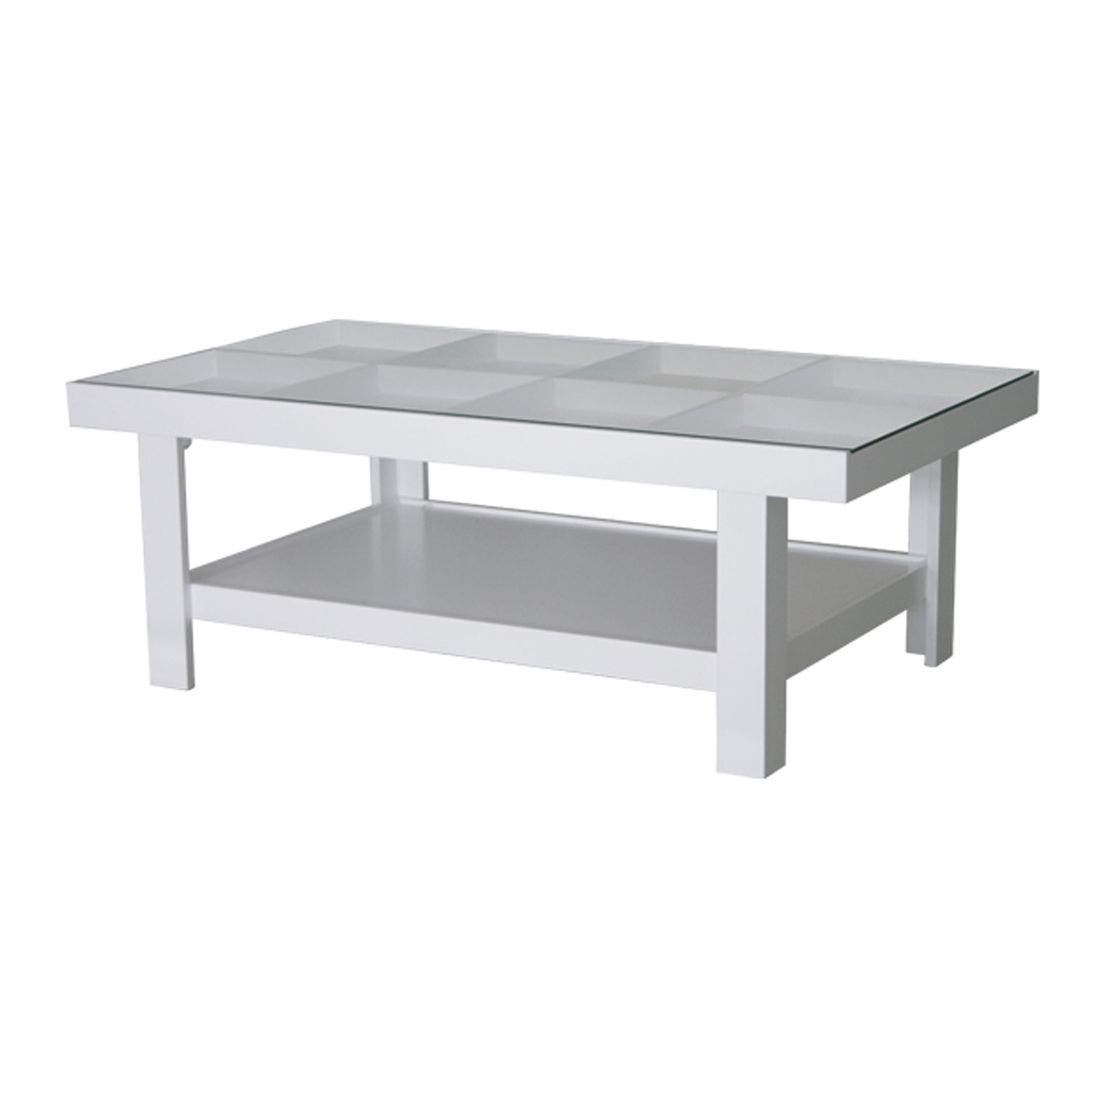 โต๊ะกลาง โต๊ะกลางไม้ท๊อปกระจก รุ่น Adorn สีสีขาว-SB Design Square